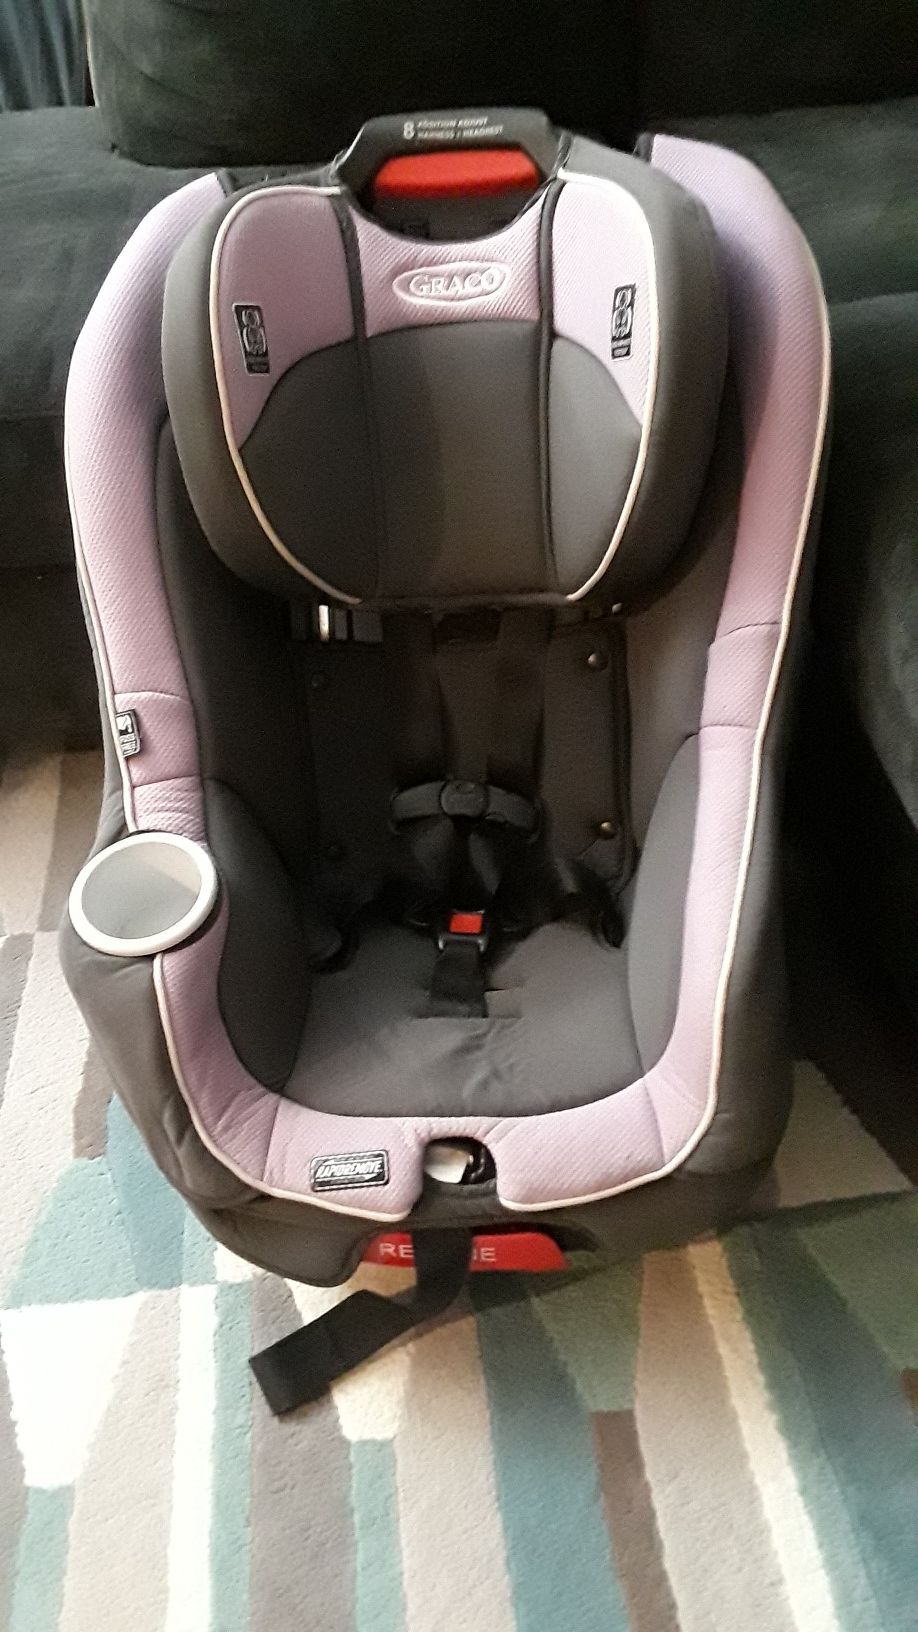 Car Seat silla para niñ@s good condition serios compradores por favor